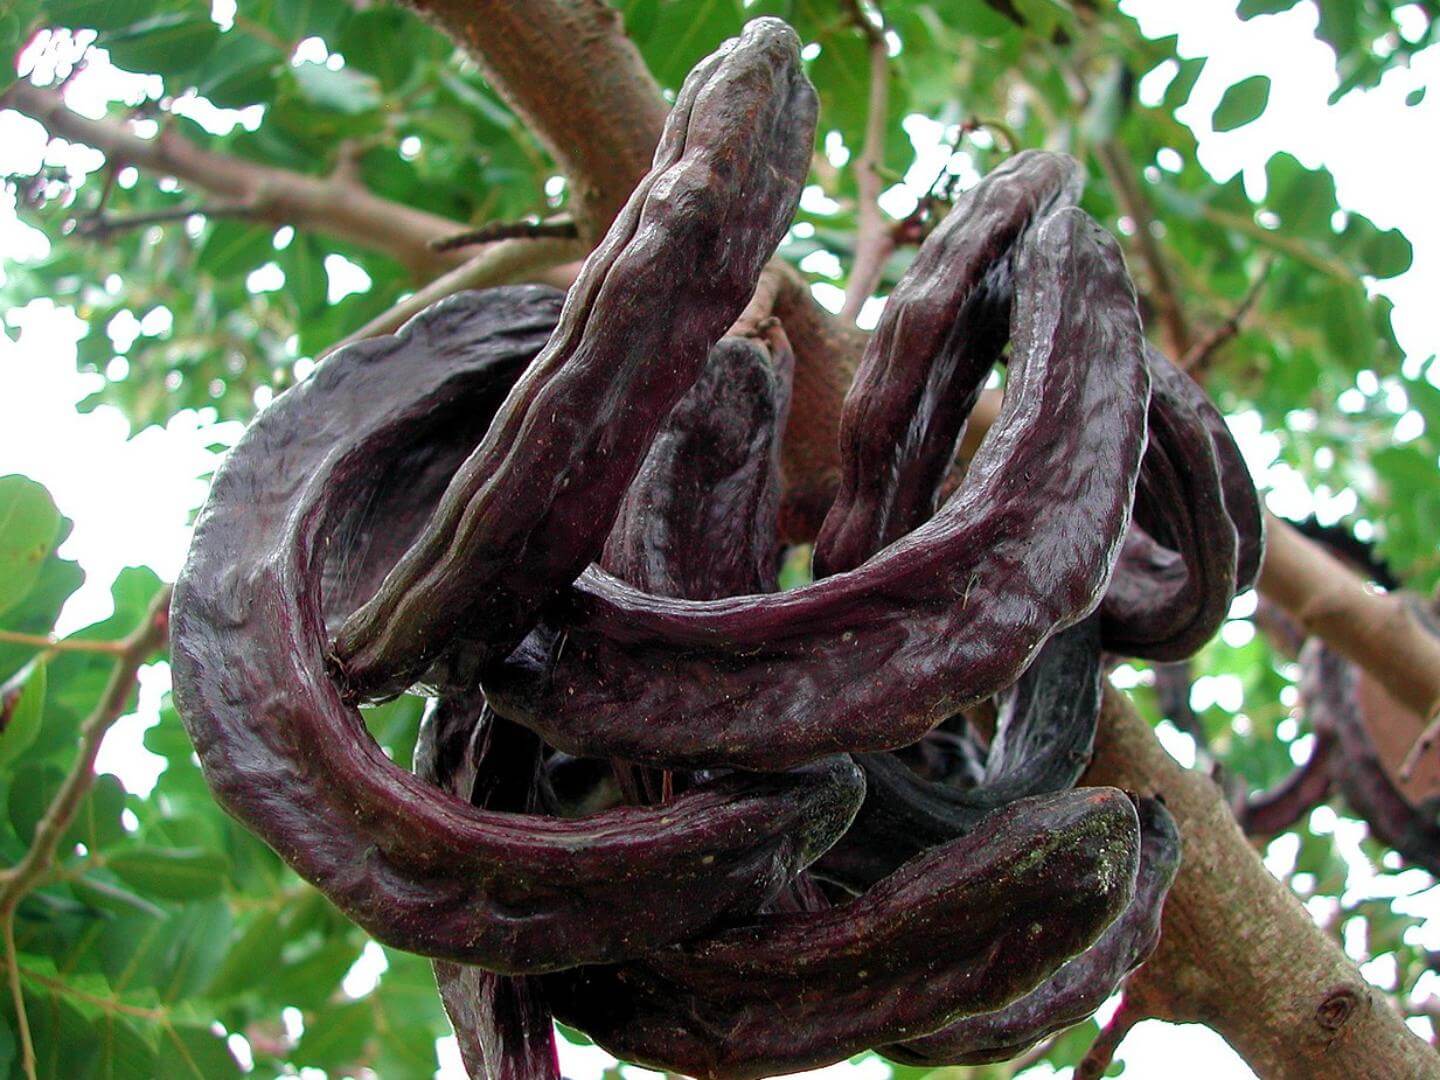 A alfarroba é um fruto do tipo vagem, amarronzado quando madura, pertencente ao grupo das leguminosas. Atinge até 25 cm de comprimento. Foto: Chixoy/Commons